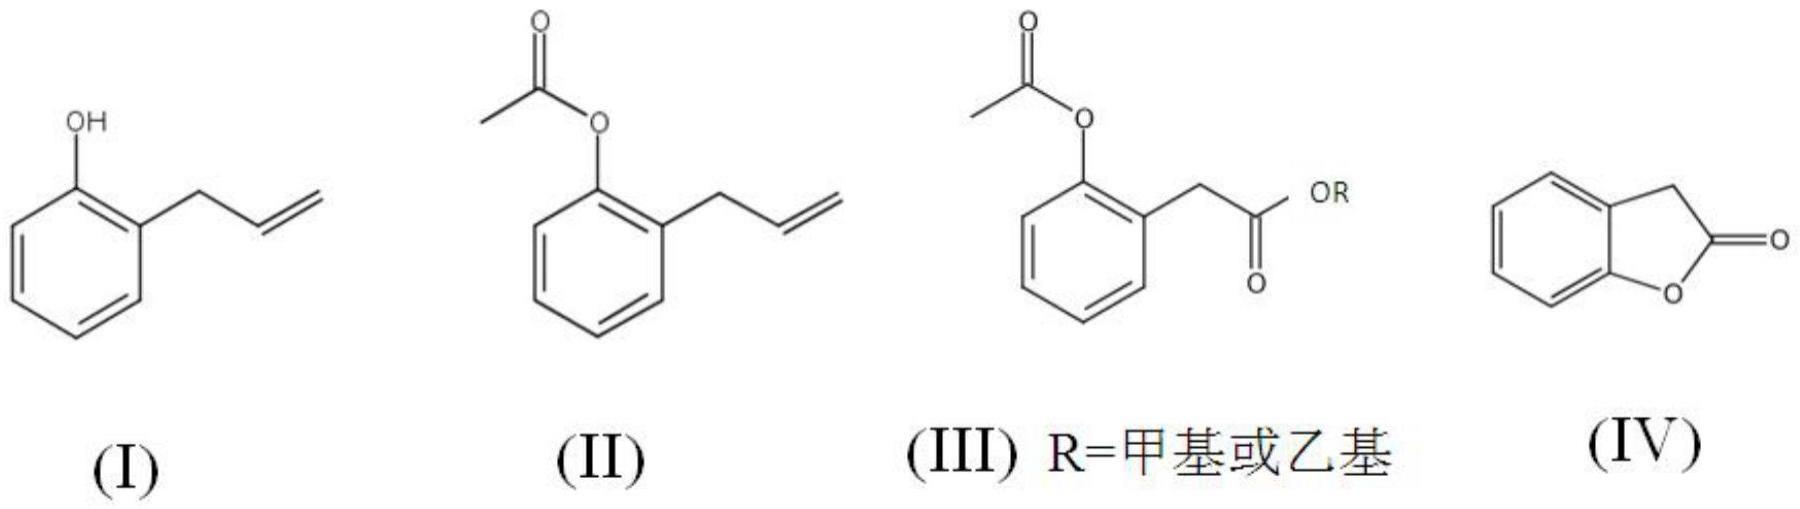 苯并呋喃酮的合成方法